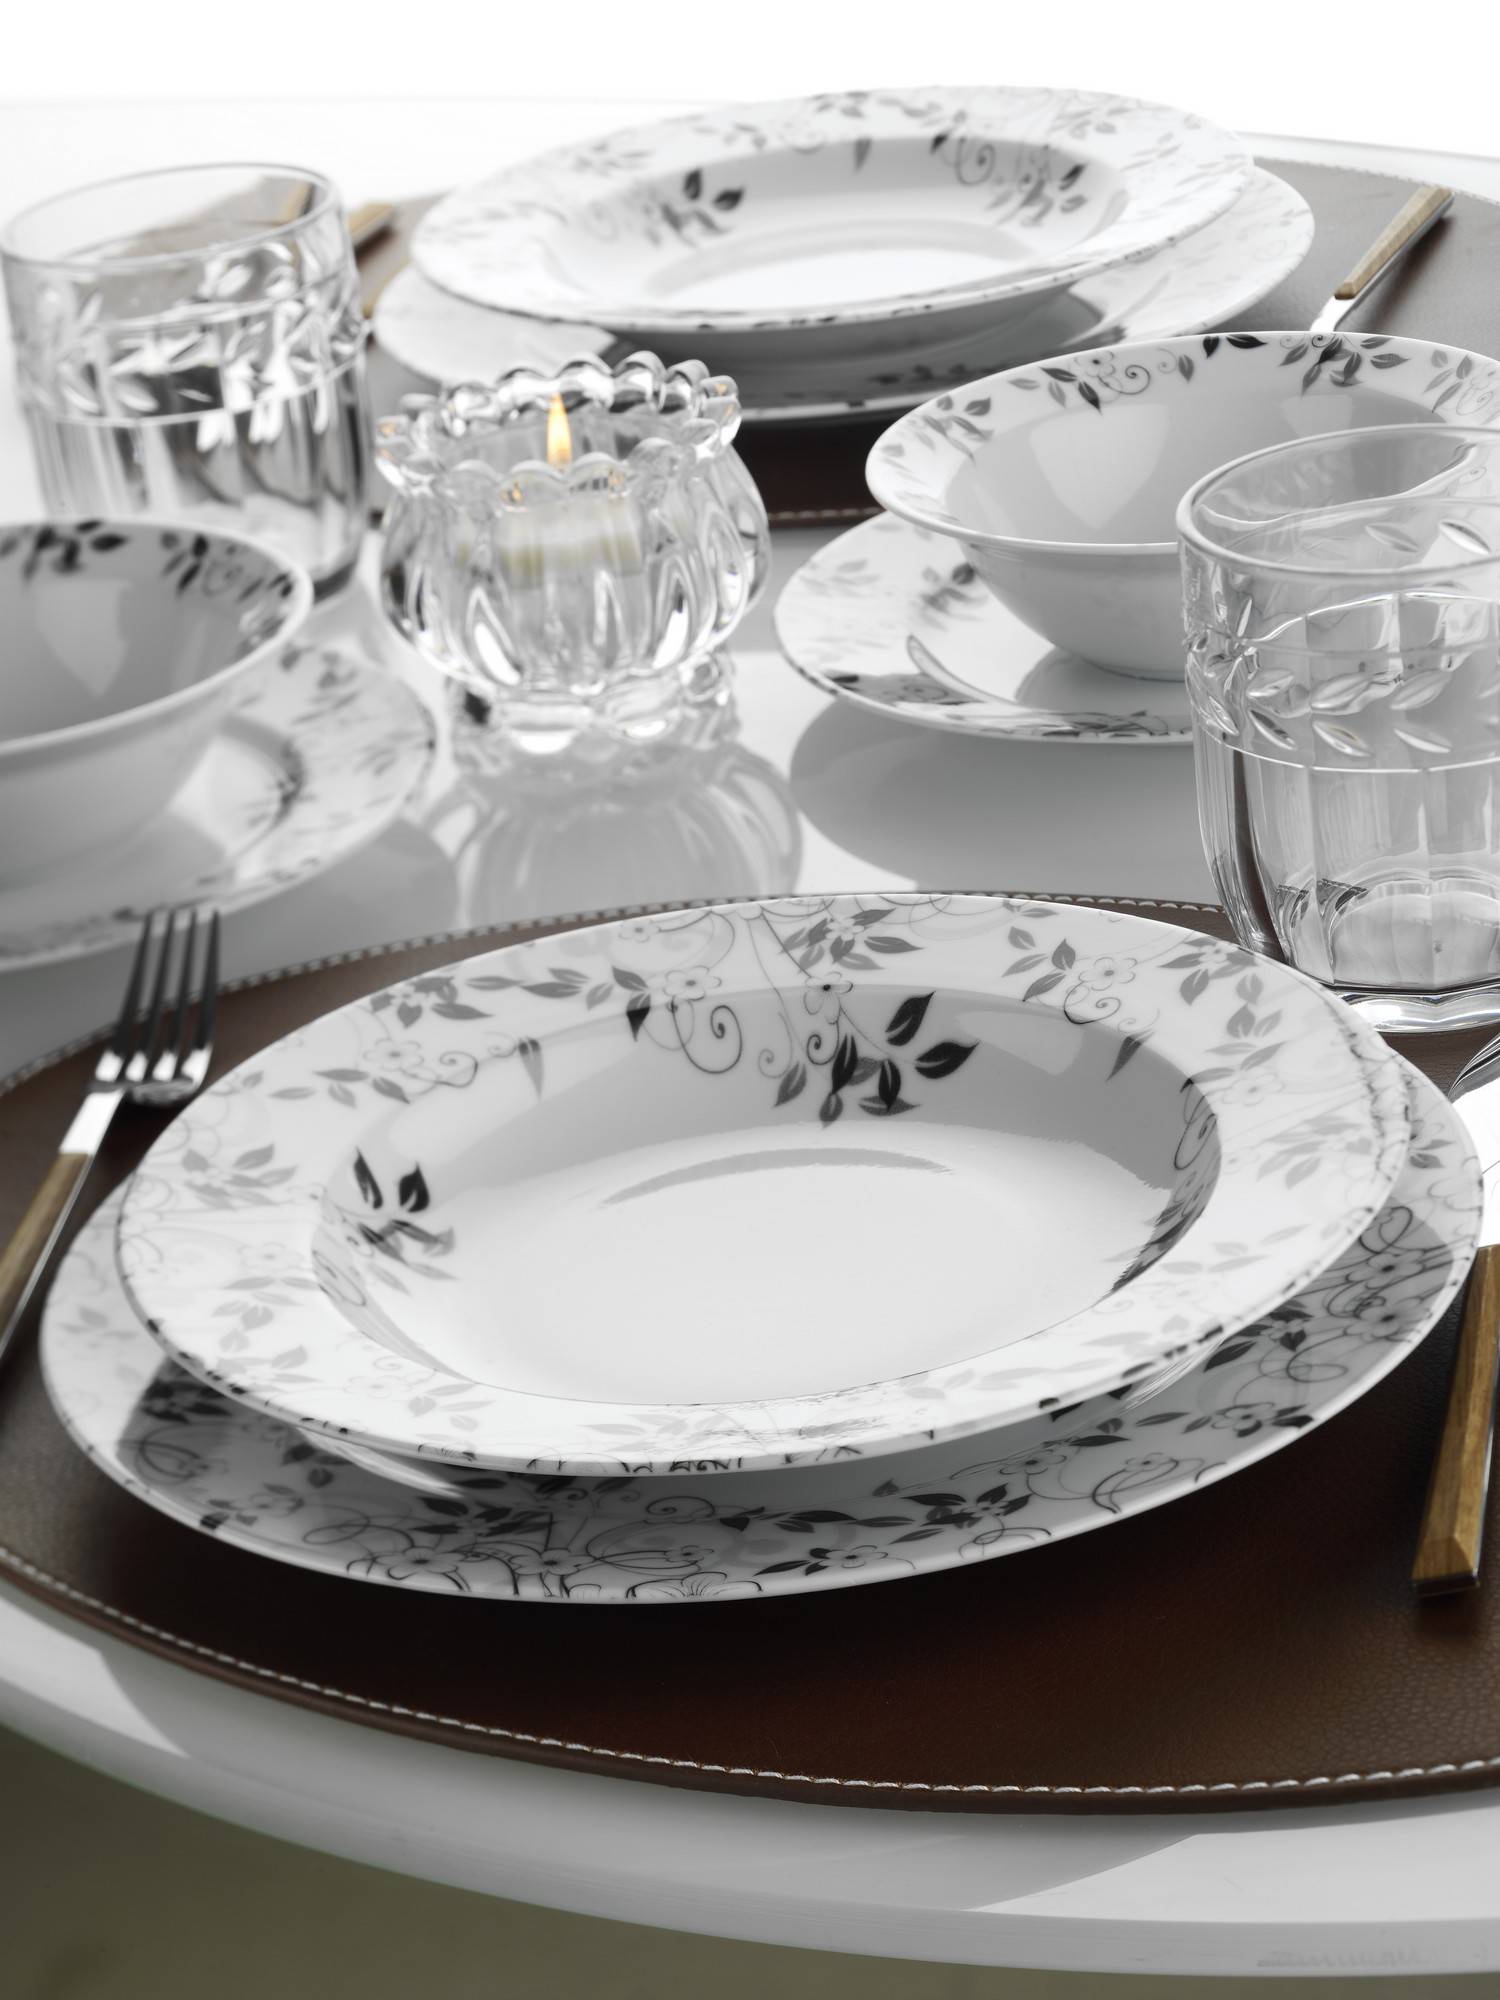 Duplicatie Wedstrijd Plantage Set vaisselle service dîner 24 pièces Murrina Porcelaine Blanc Gris